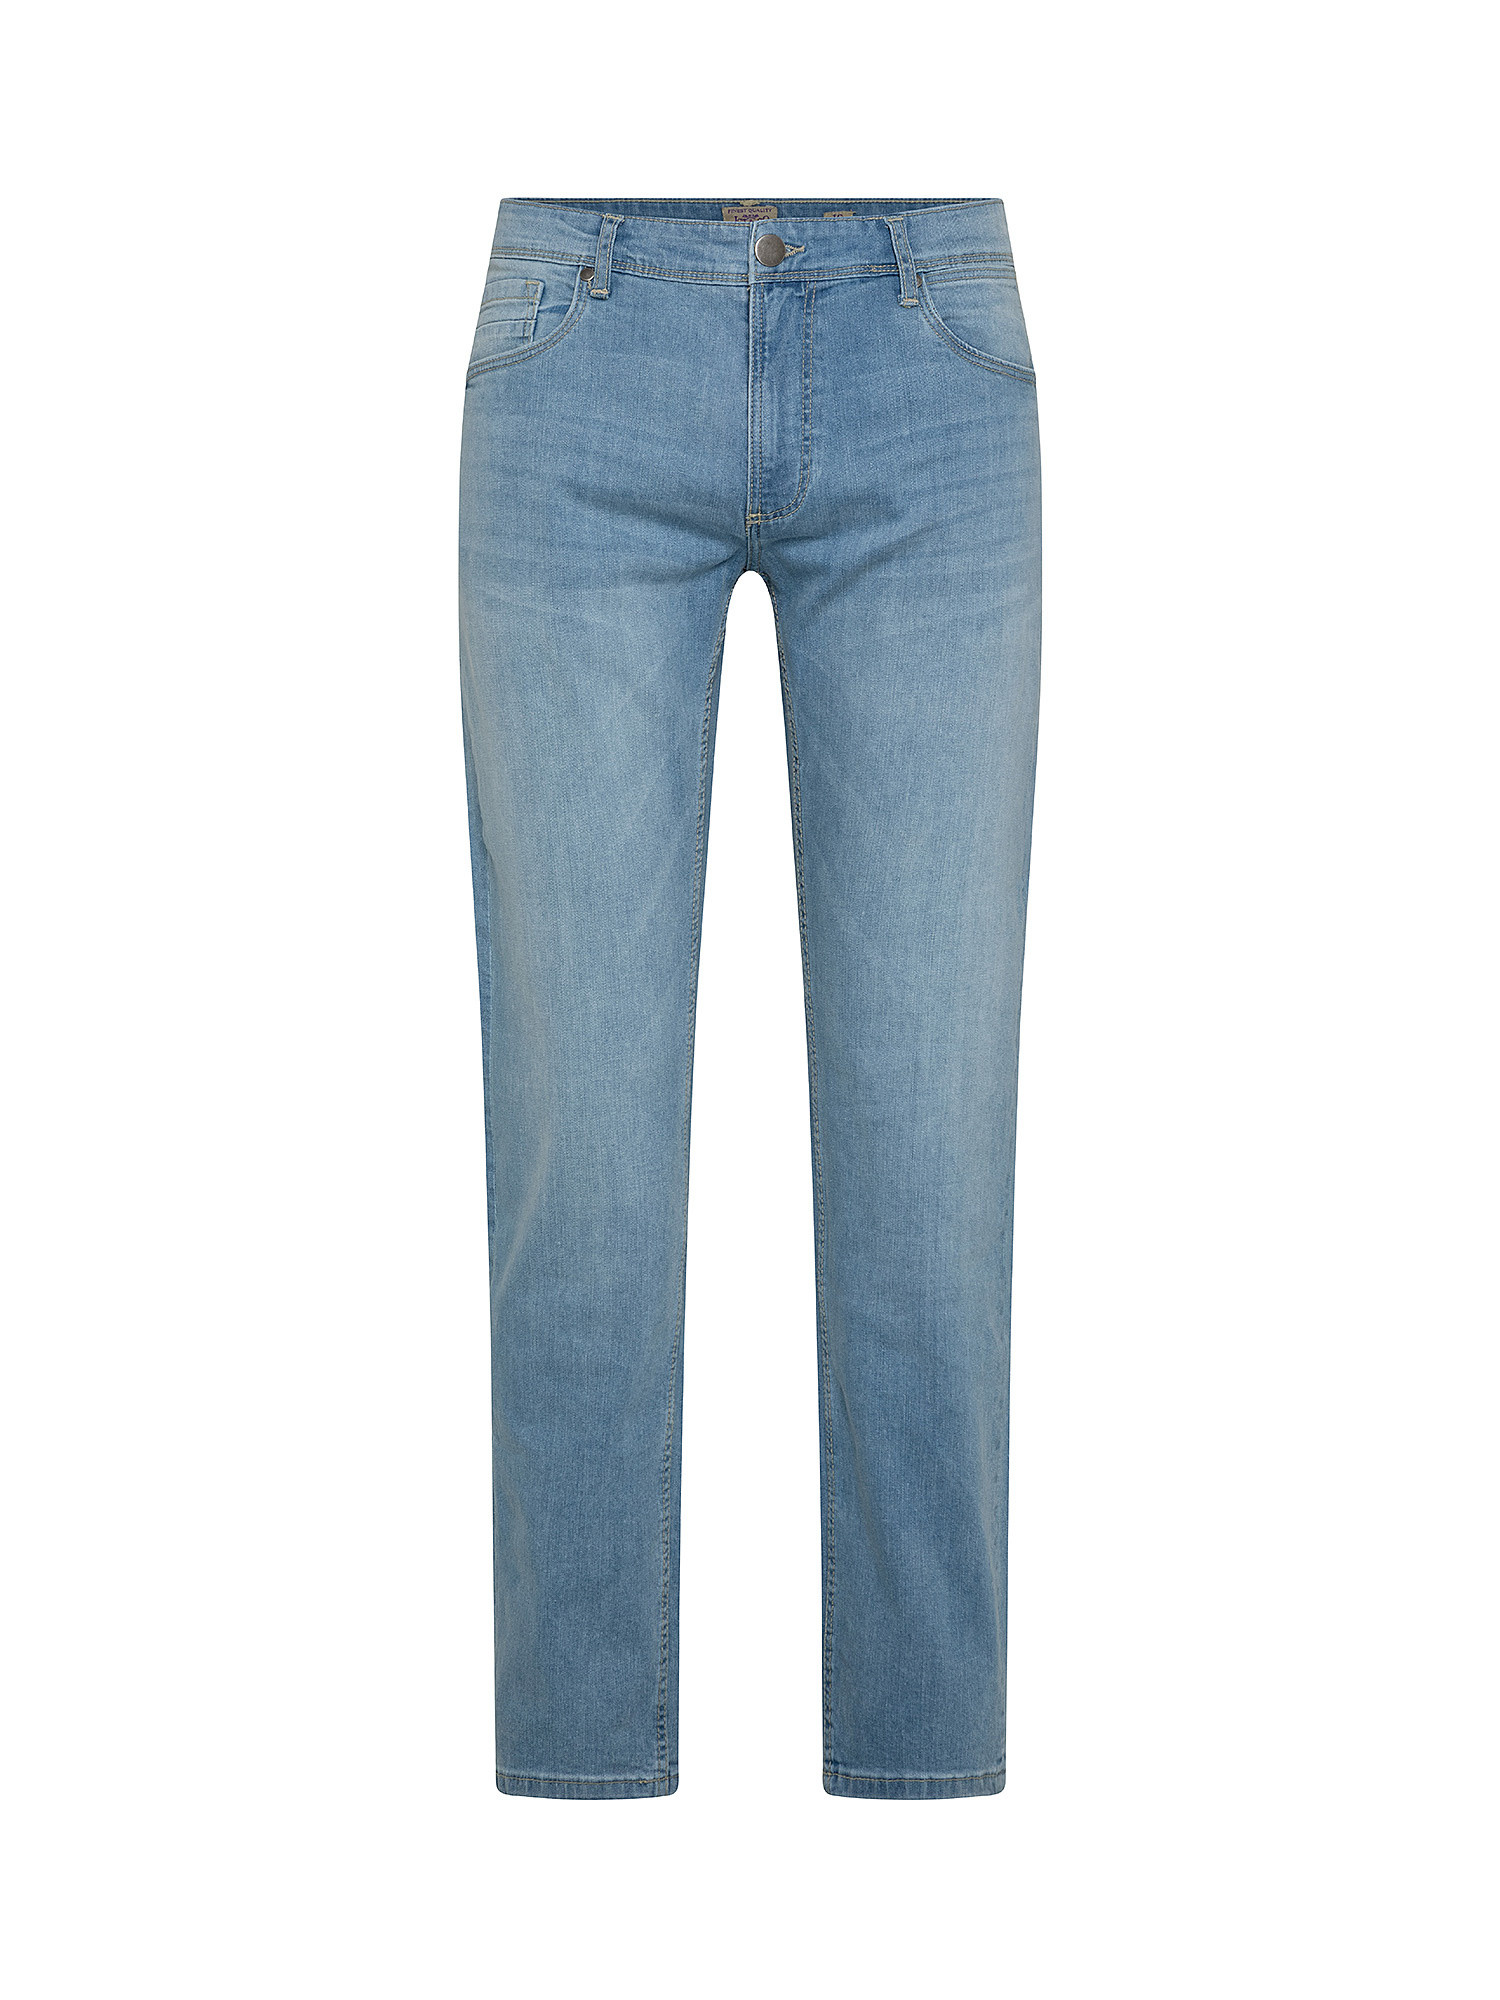 Jeans 5 tasche slim cotone leggero stretch, Blu chiaro, large